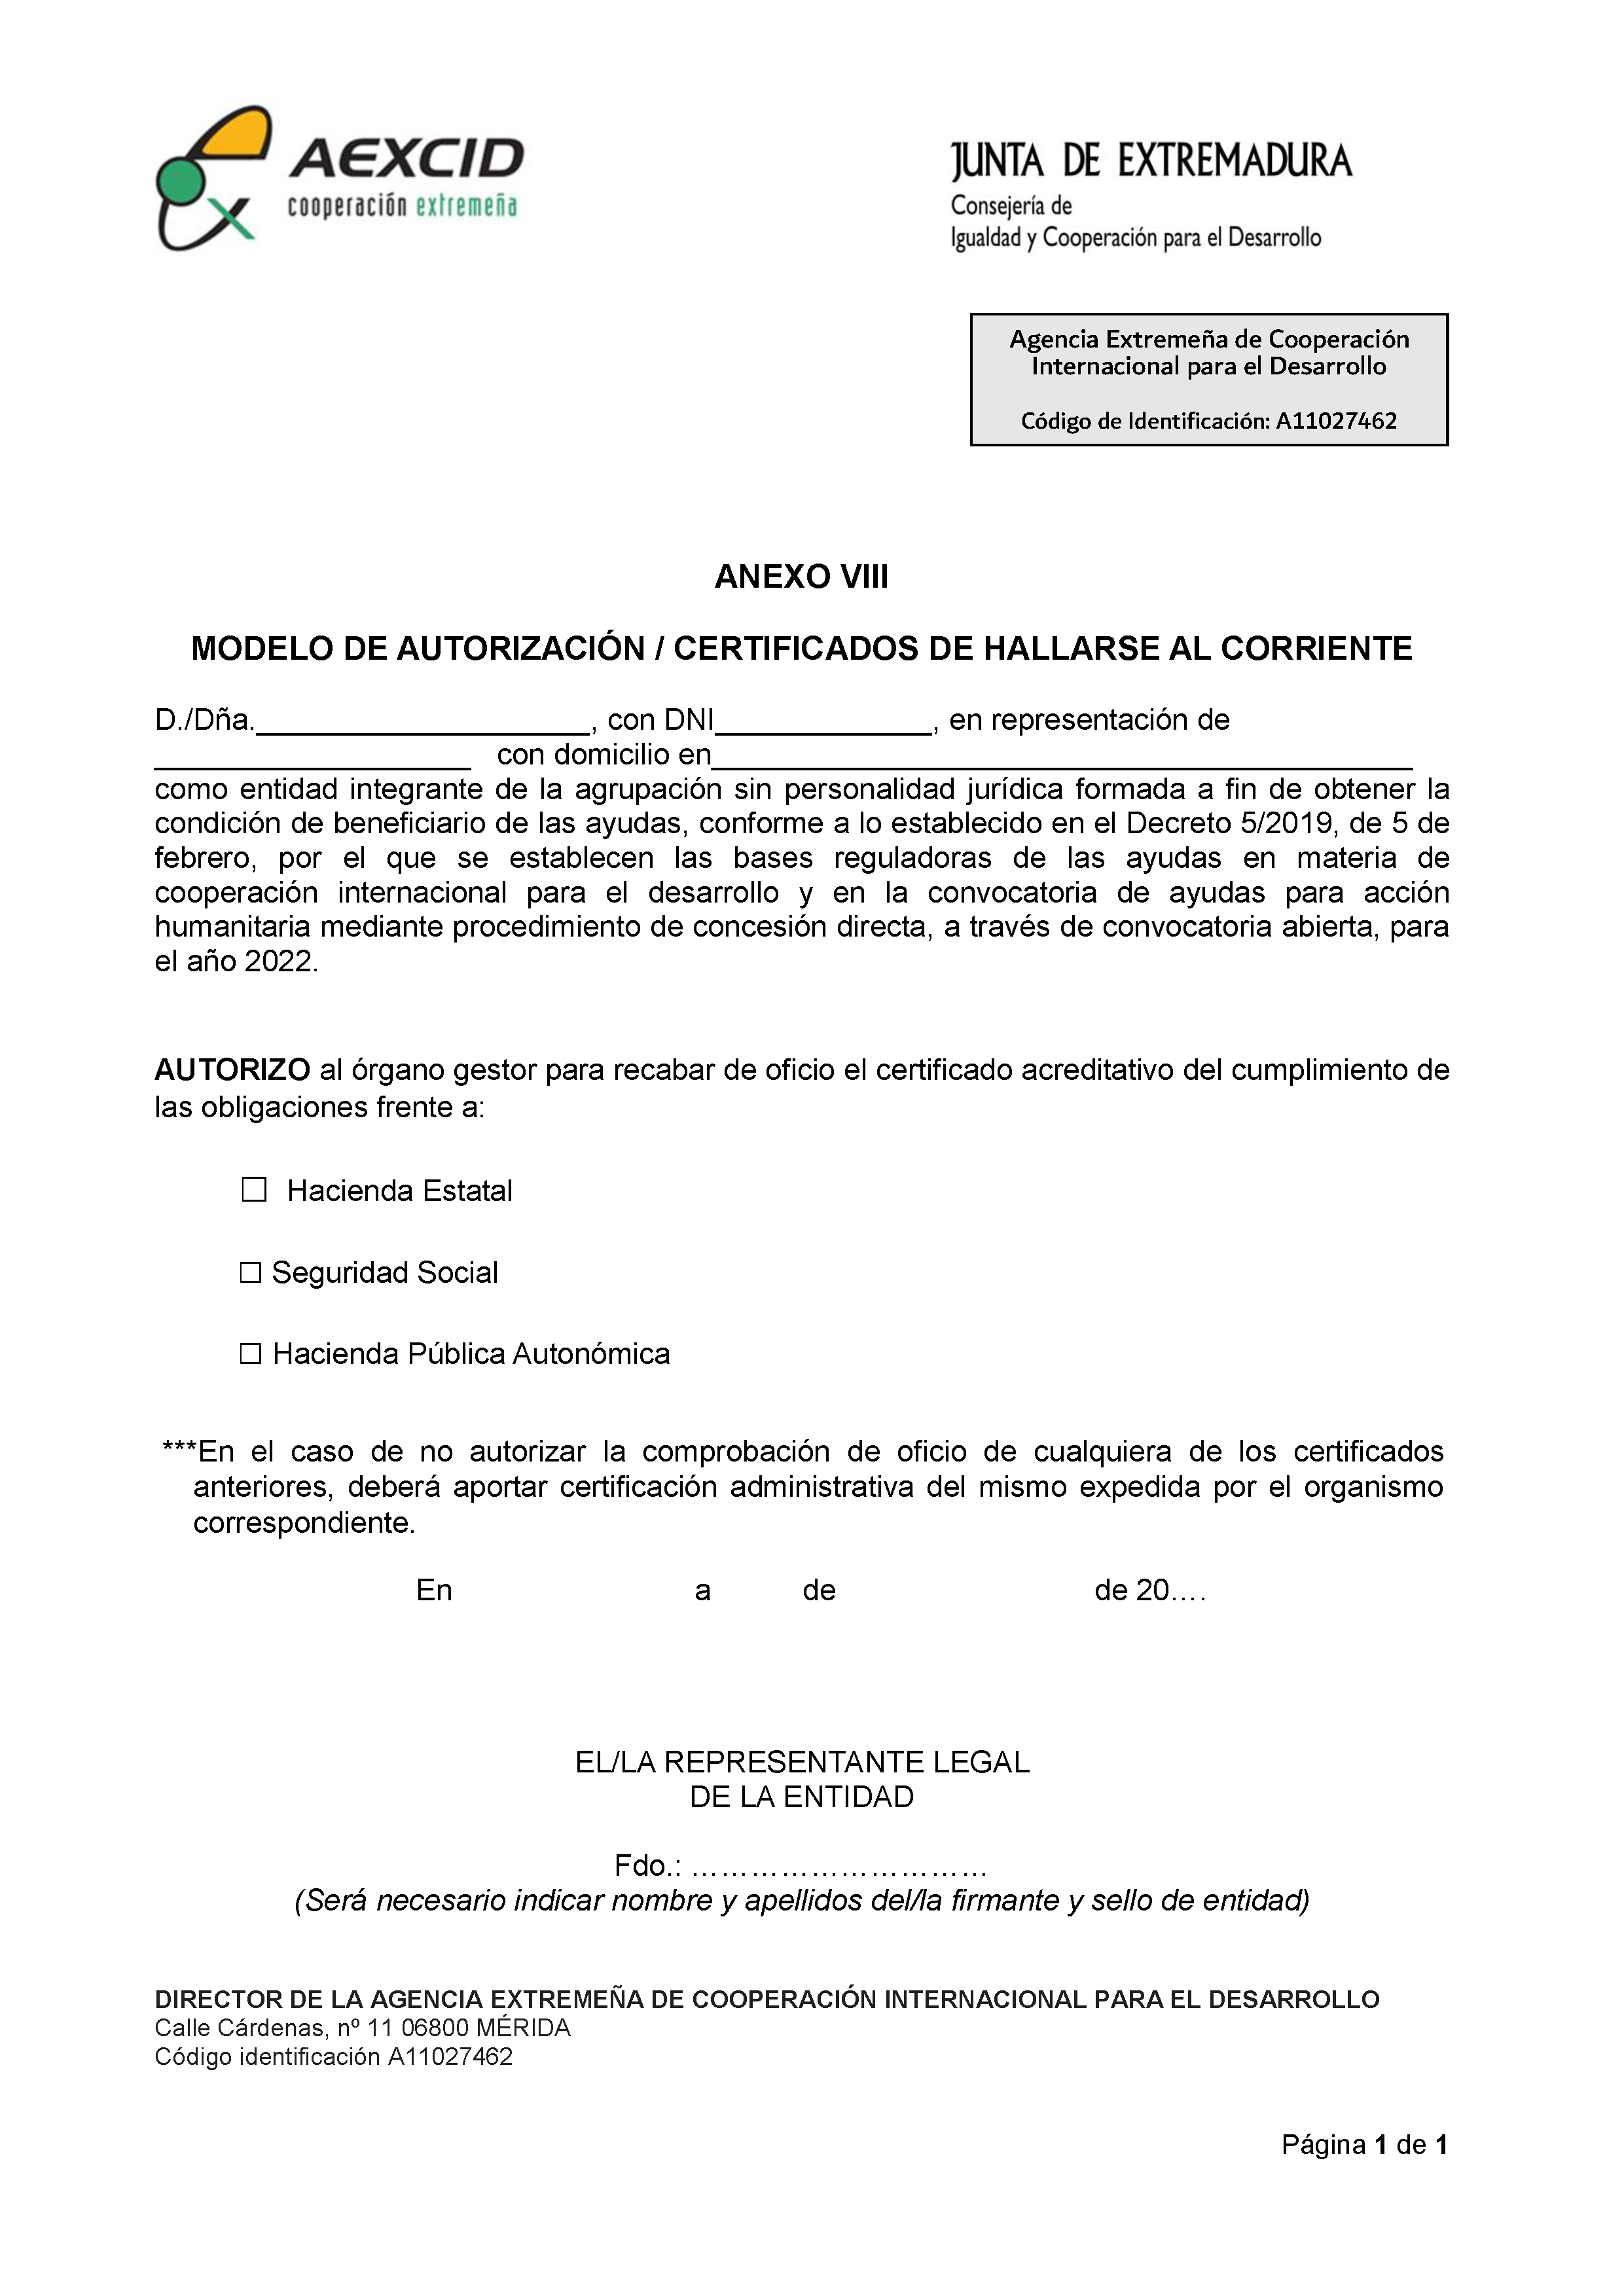 ANEXO VIII MODELO DE AUTORIZACIÓN / CERTIFICADOS DE HALLARSE AL CORRIENTE